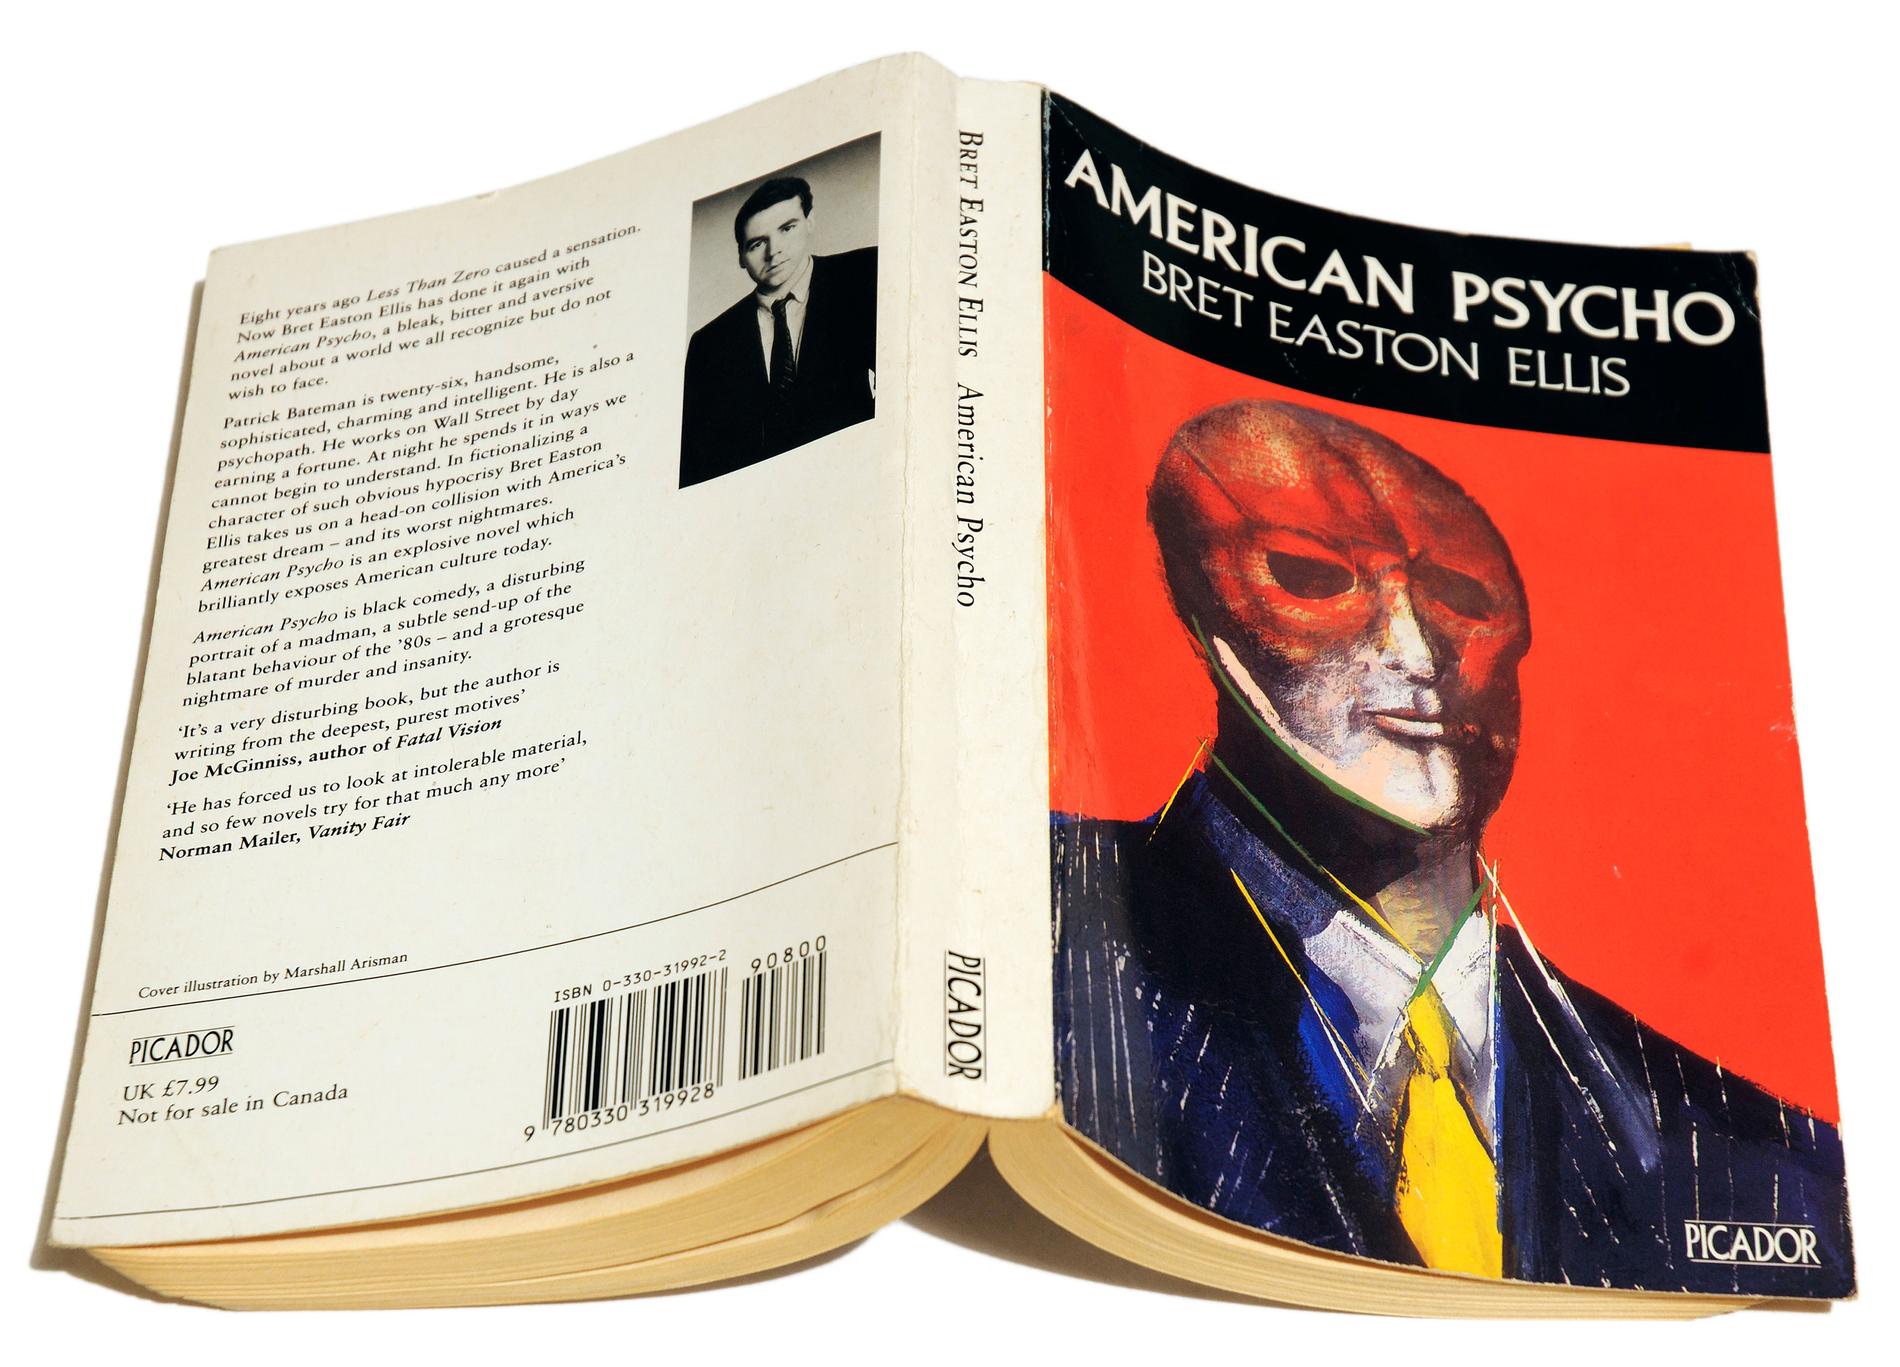 ”För mig som ung var ’American psycho’ en farlig bok, den skadade mig på samma sätt som livet kan skada en”, skriver Karin Pettersson.